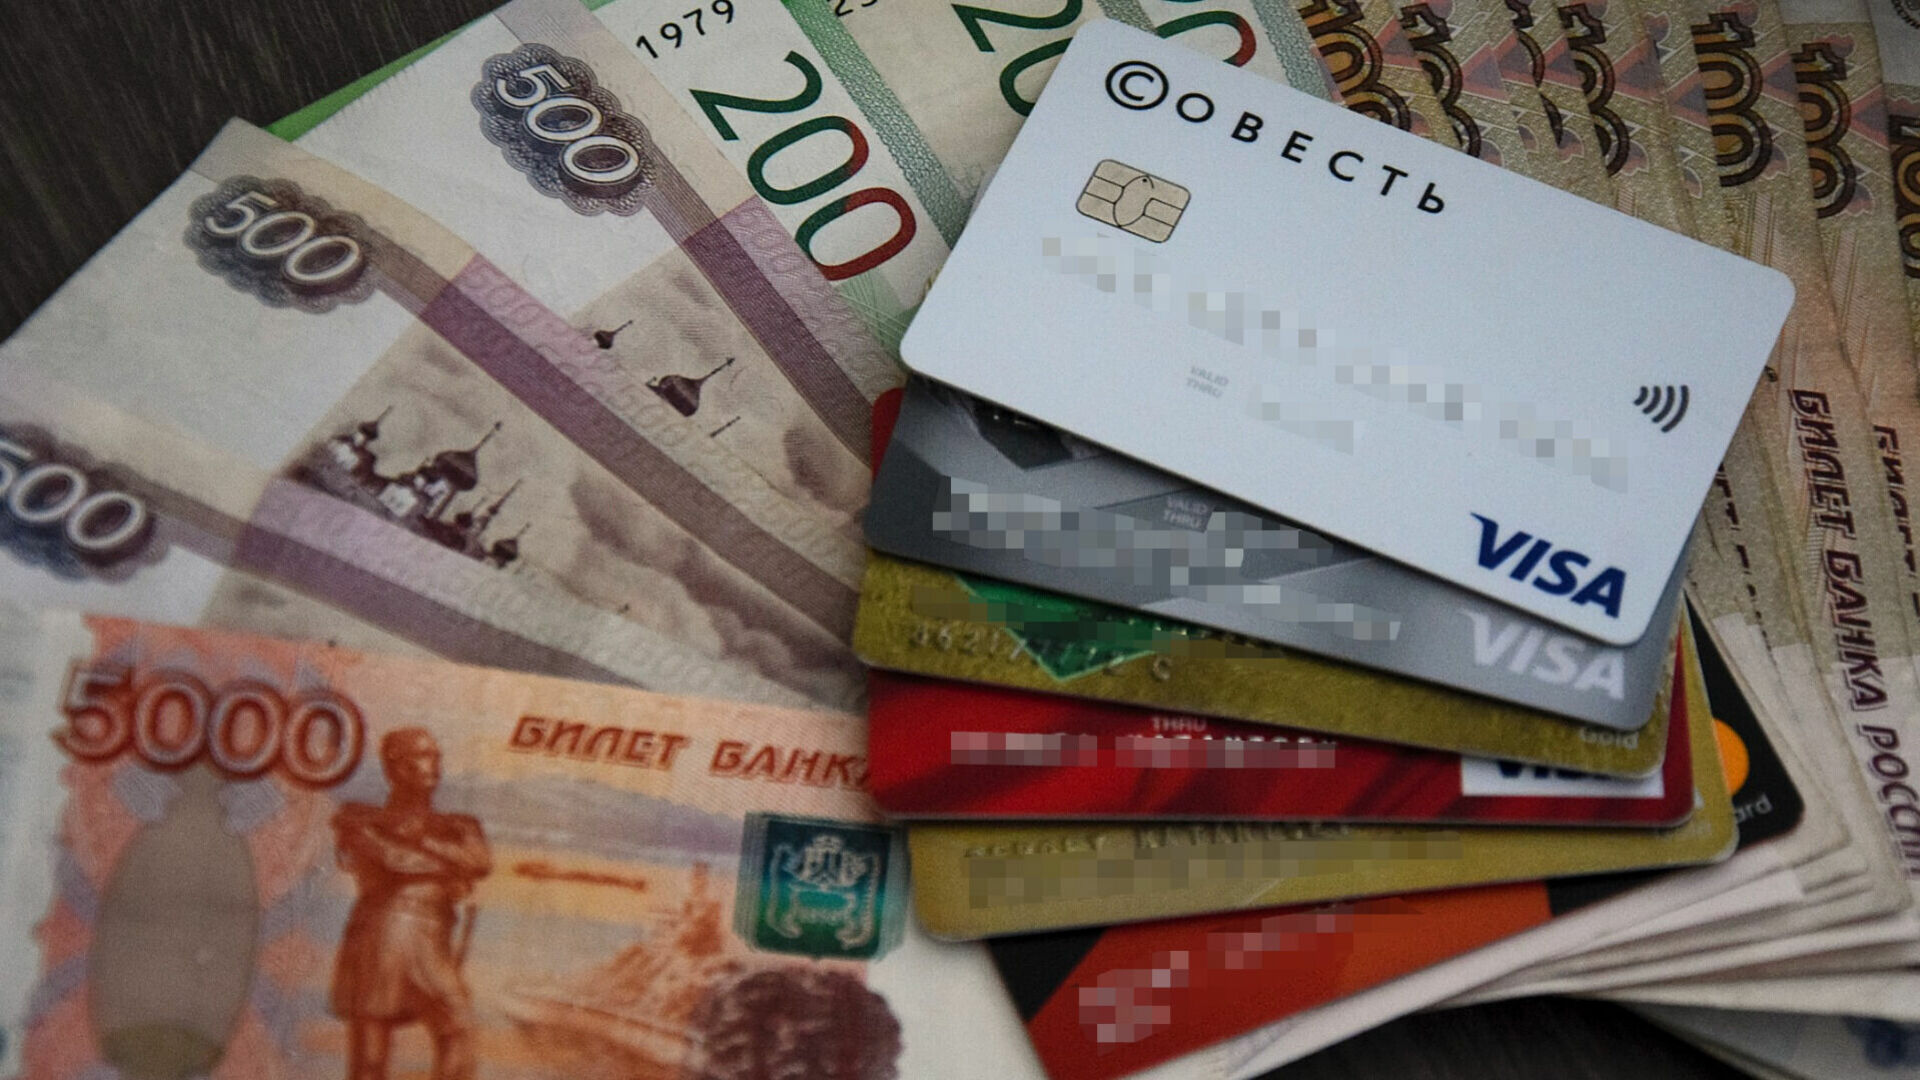 Безработный гражданин Тюмени взял кредит у банка на 460 рублей и сбежал